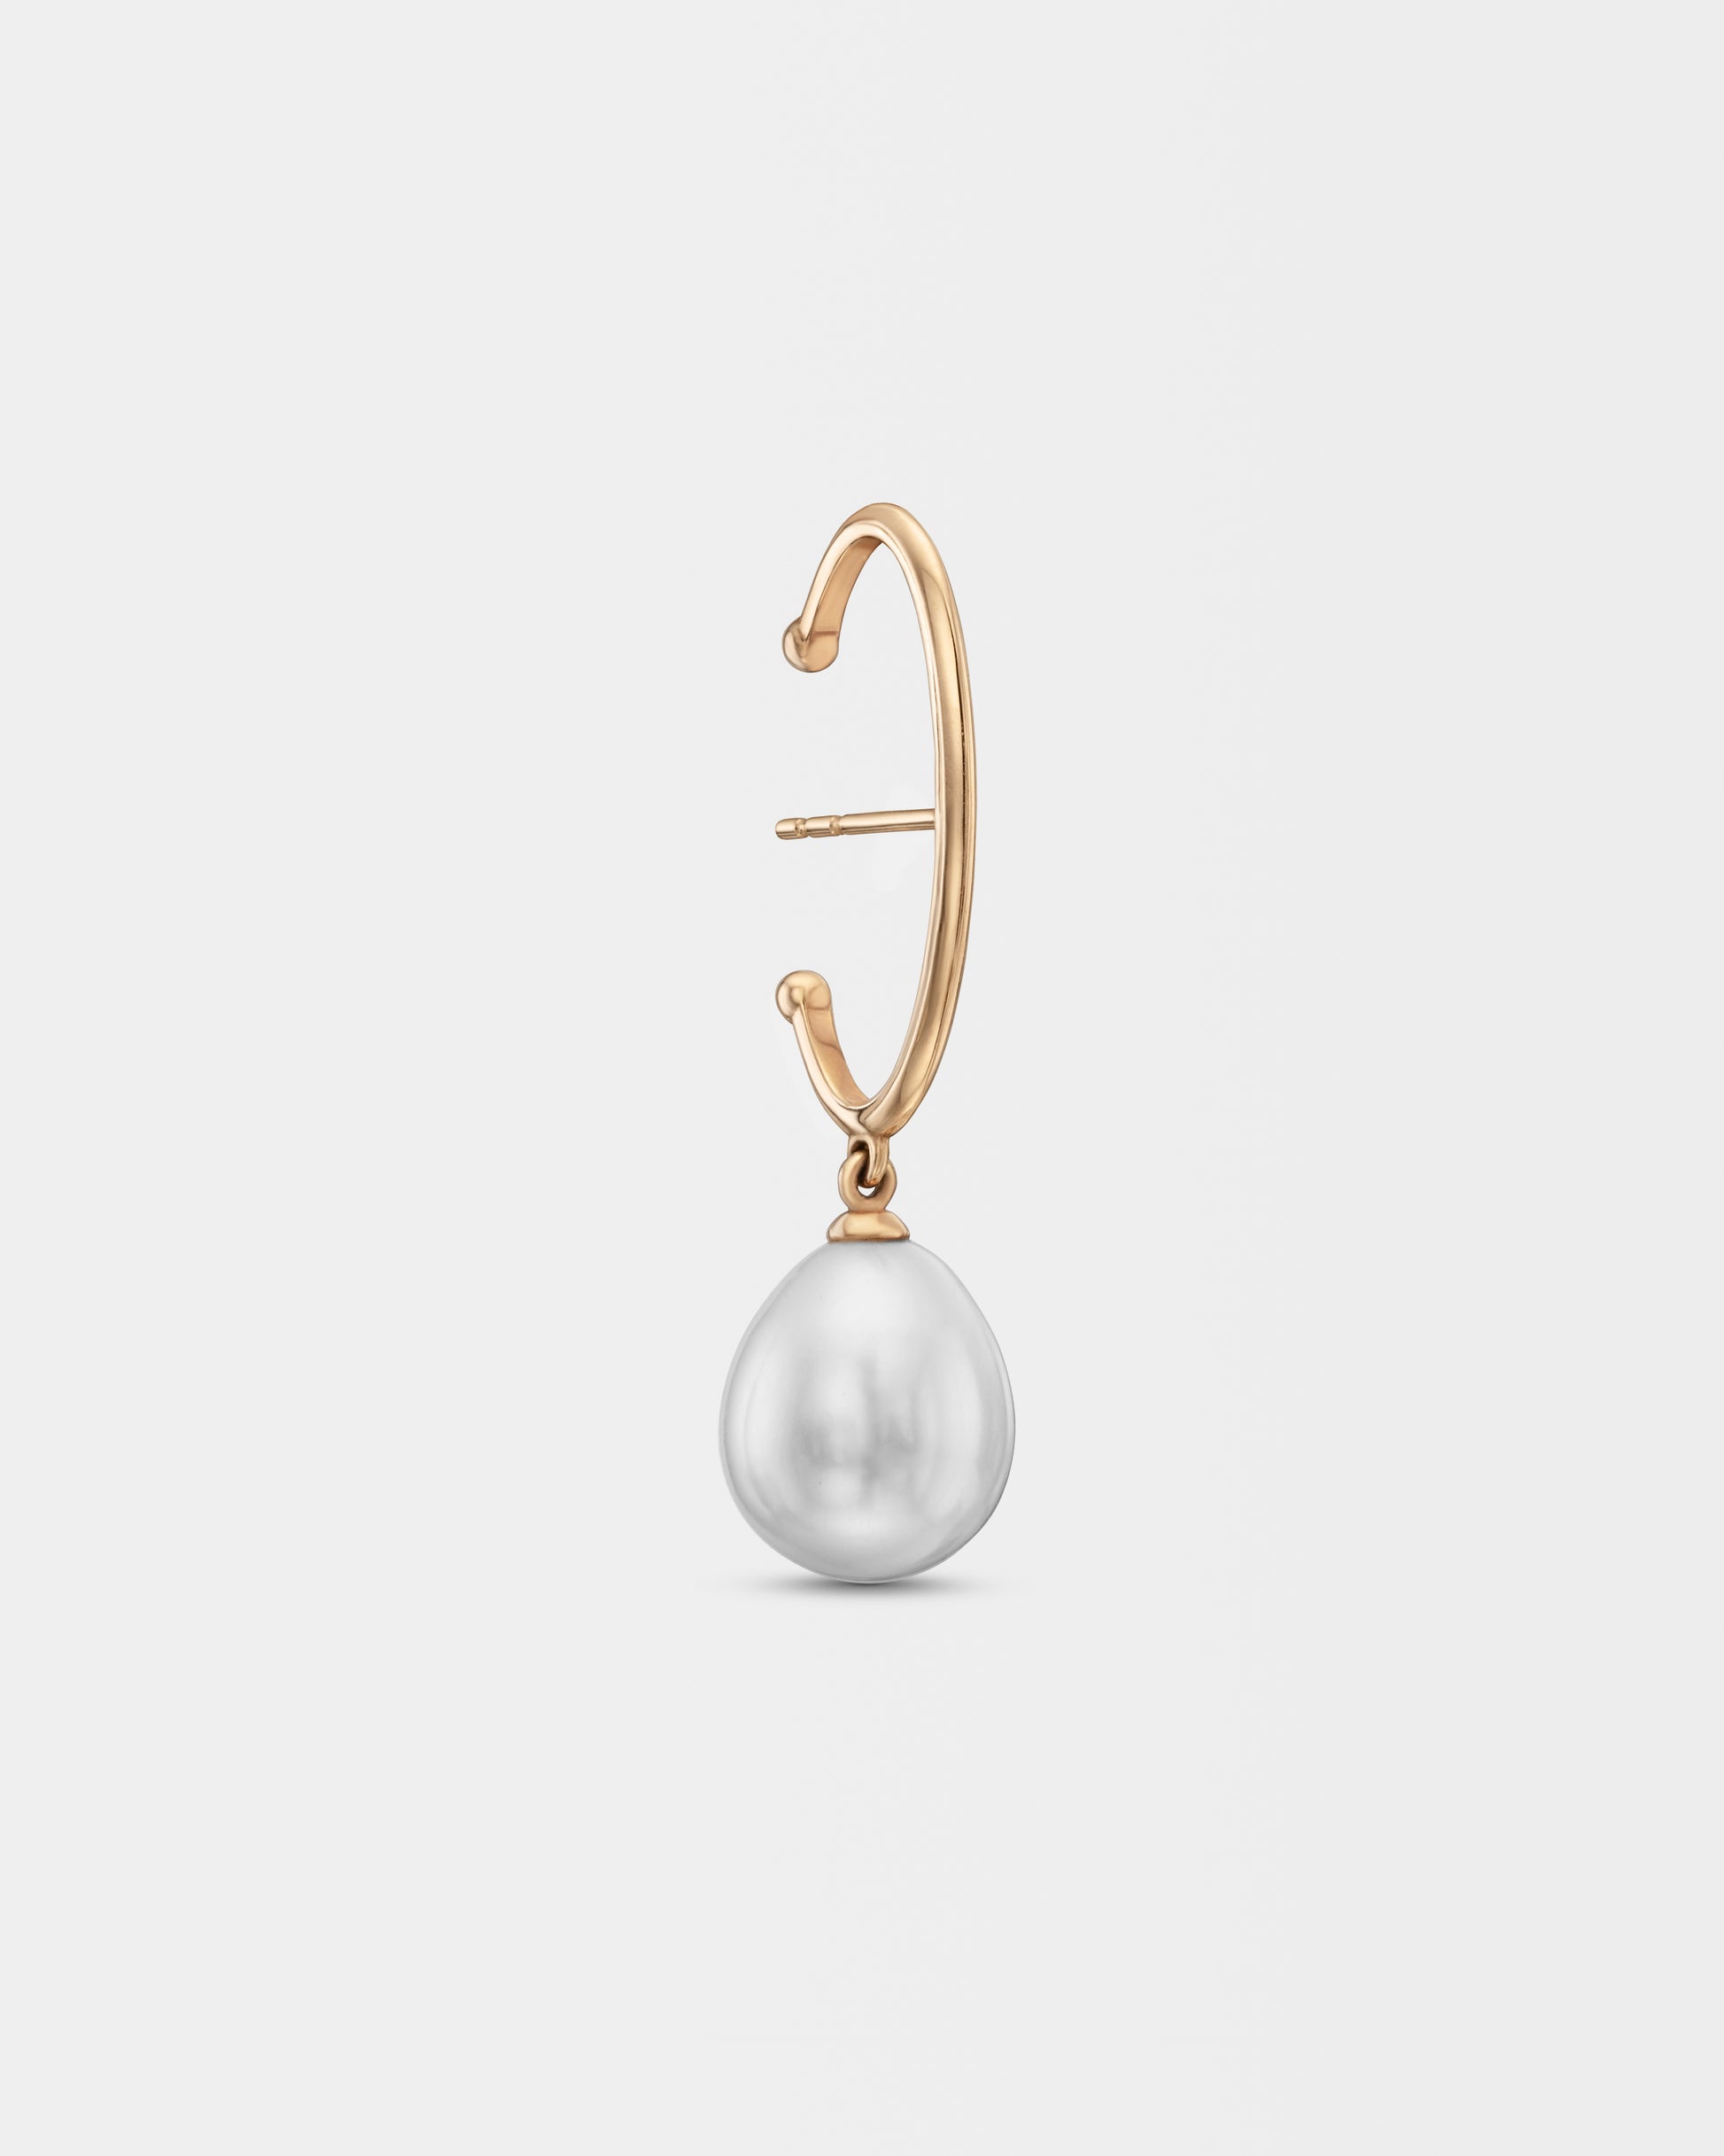 Juliette Kor jewelry Sofia mono earring with pearl